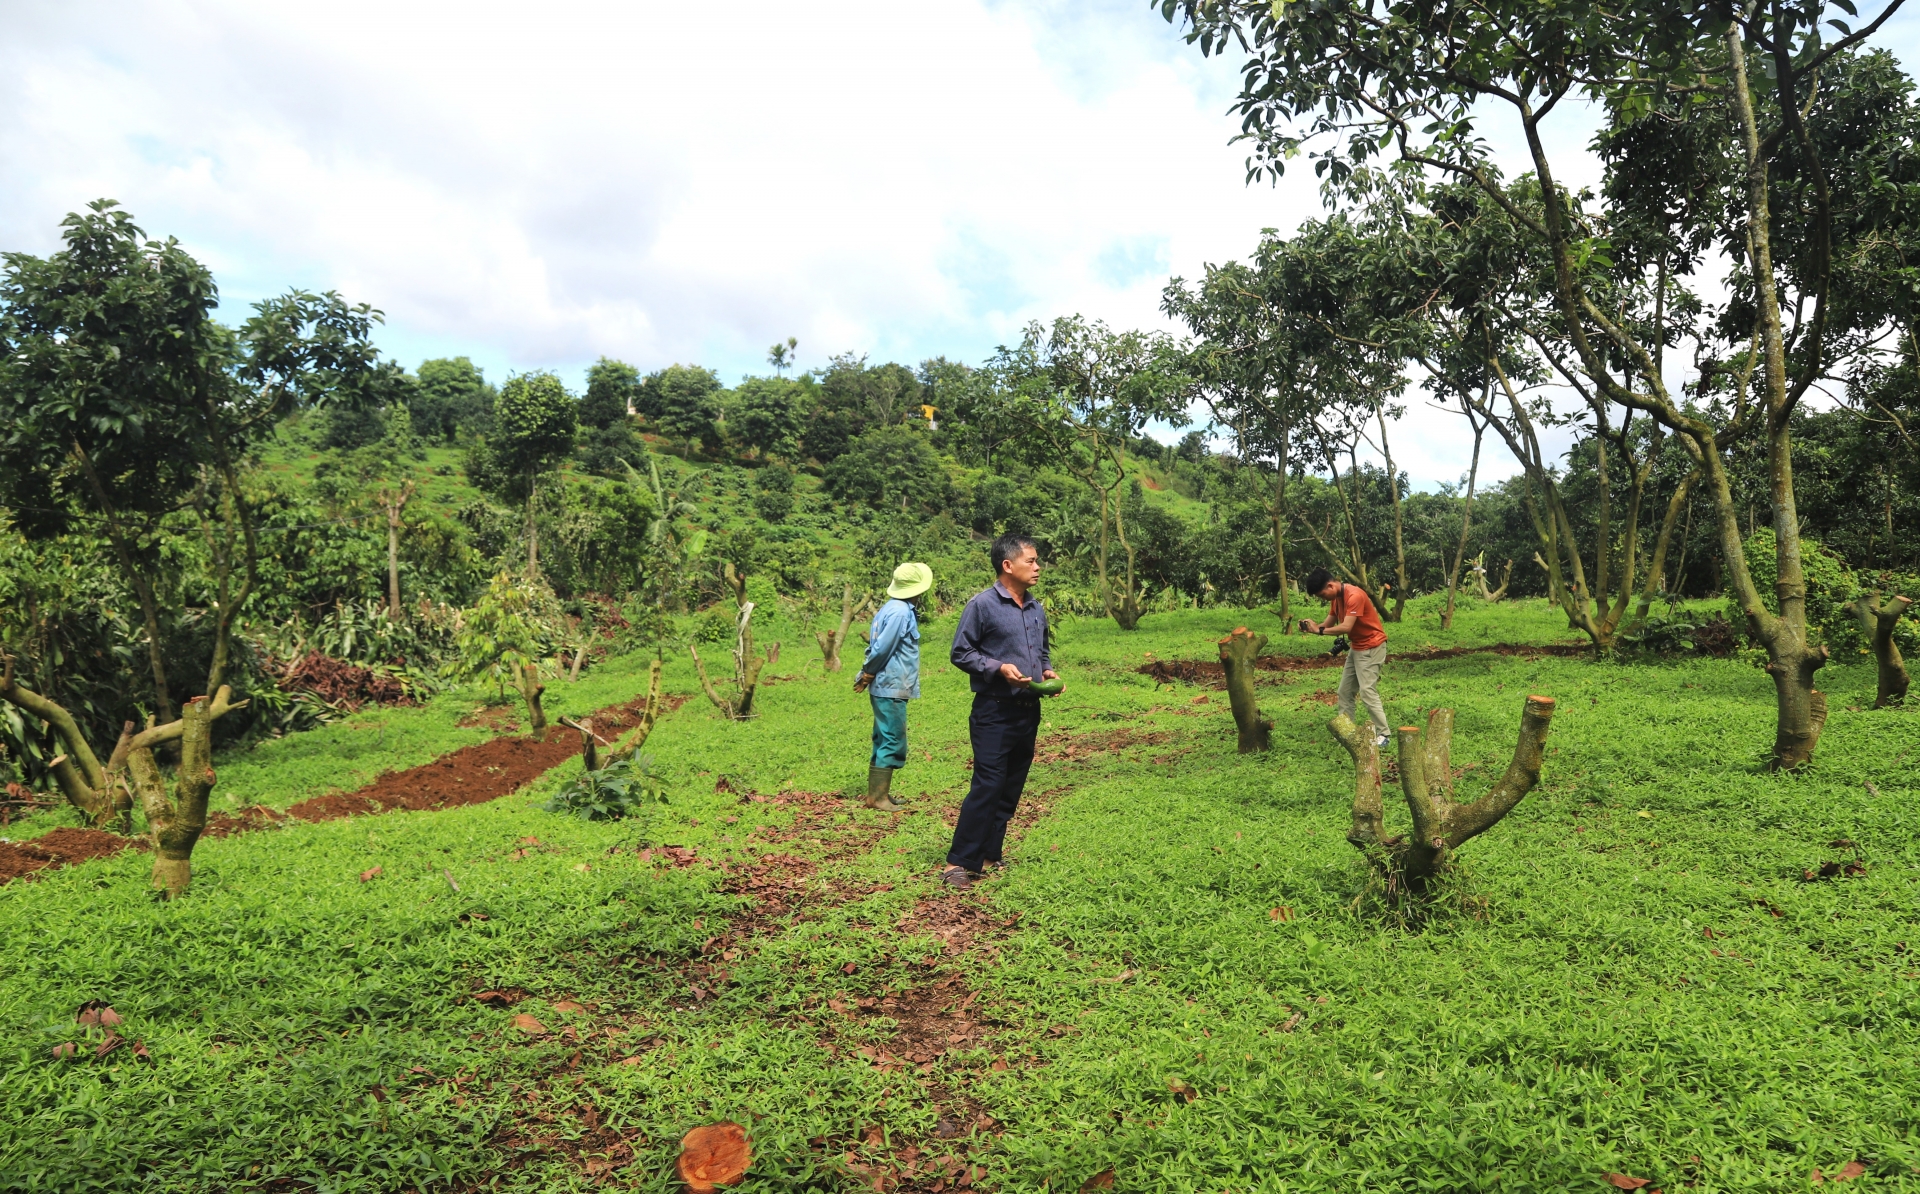 Nhiều hộ dân trồng bơ 034 trên địa bàn huyện Bảo Lâm cưa bỏ vườn bơ vì giá quá thấp để chuyển qua trồng cây cà phê